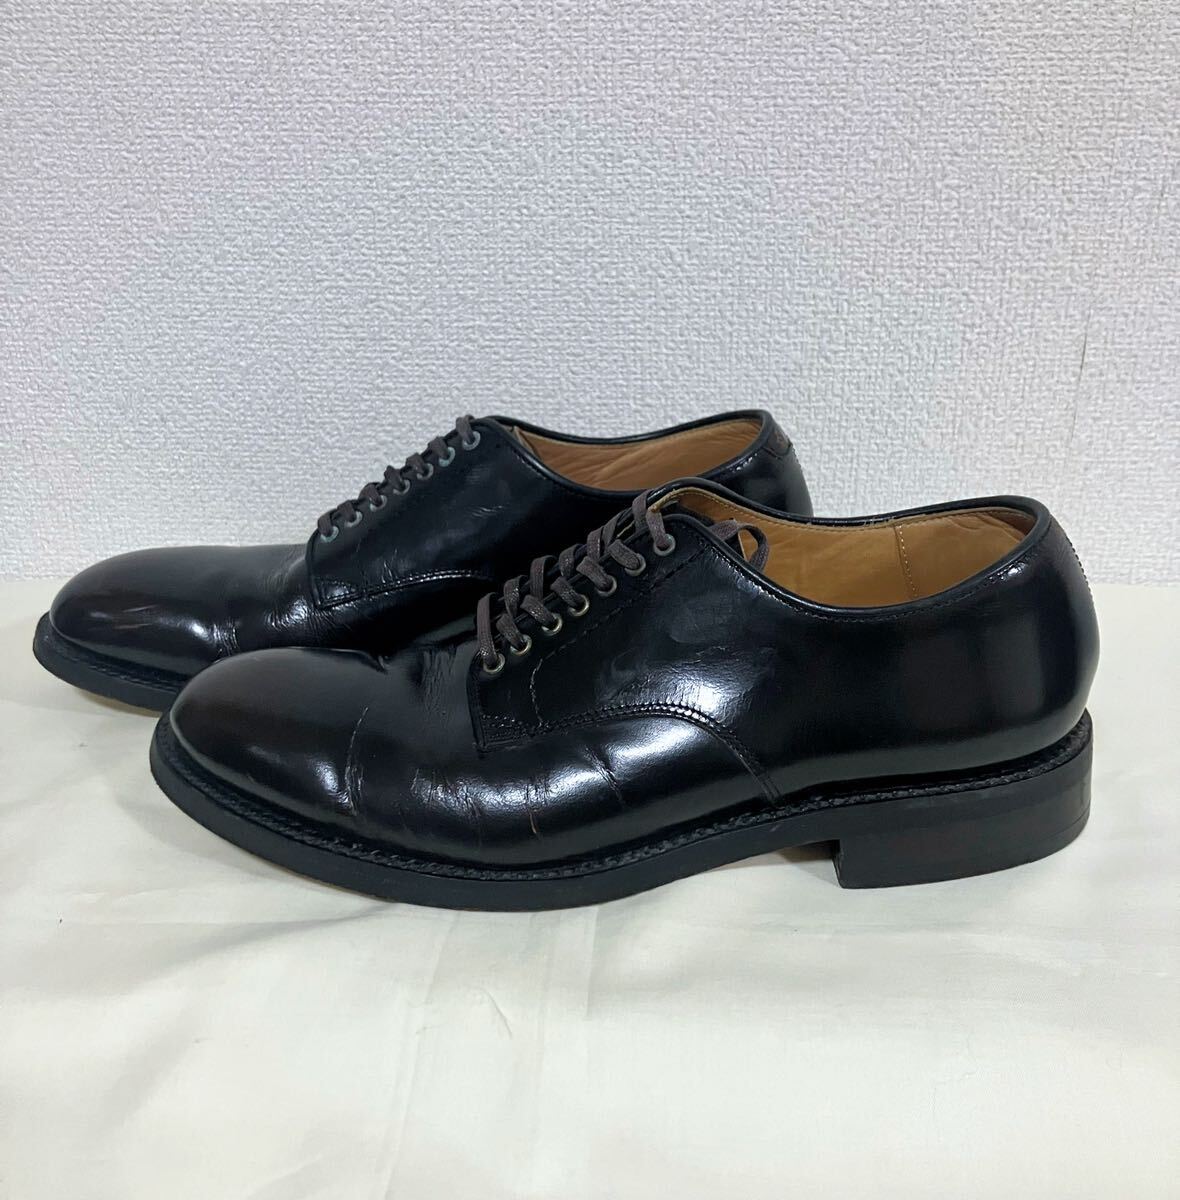 TMT стекло кожа платье обувь военная обувь сервис обувь Vintage обработка размер 9H сделано в Японии 